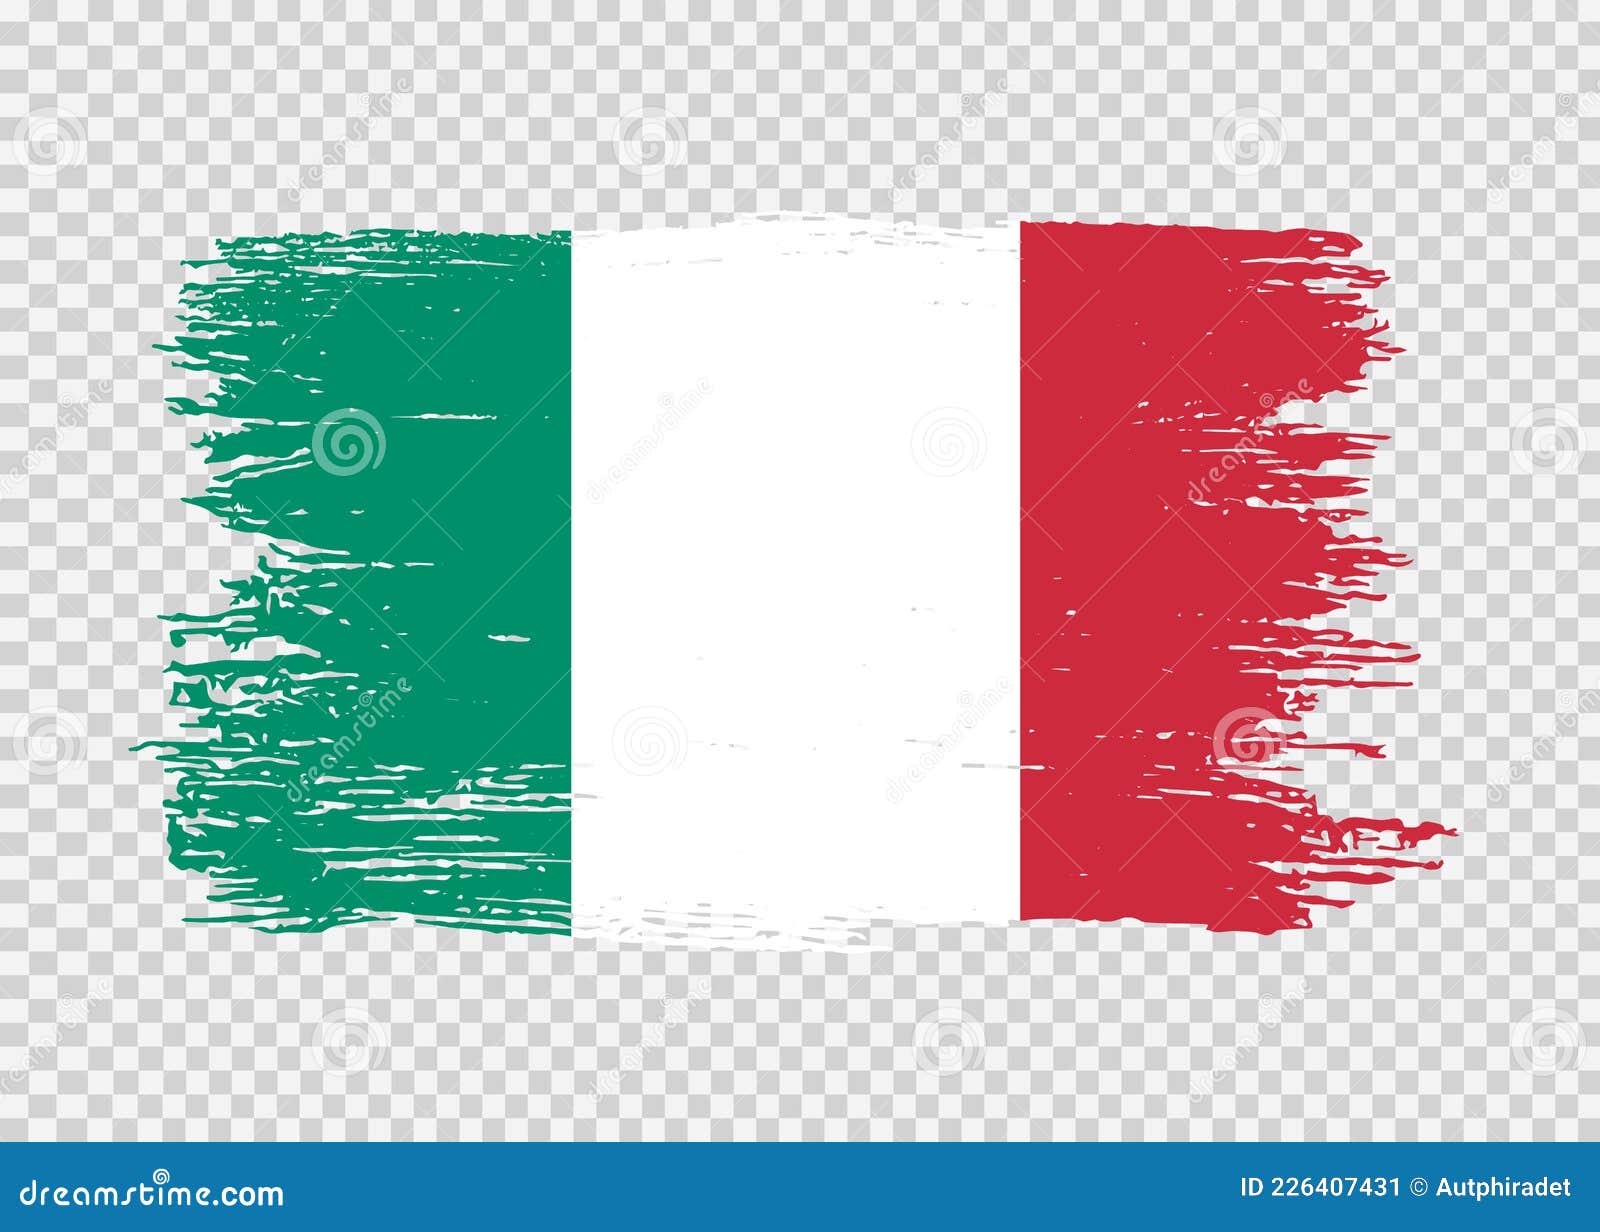 Bandiera Italia Pennellata Tipografia Etichetta Logo Iscrizione Su Fondo  Bianco Fotografia Stock - Immagine di fabbricato, vernice: 217273152